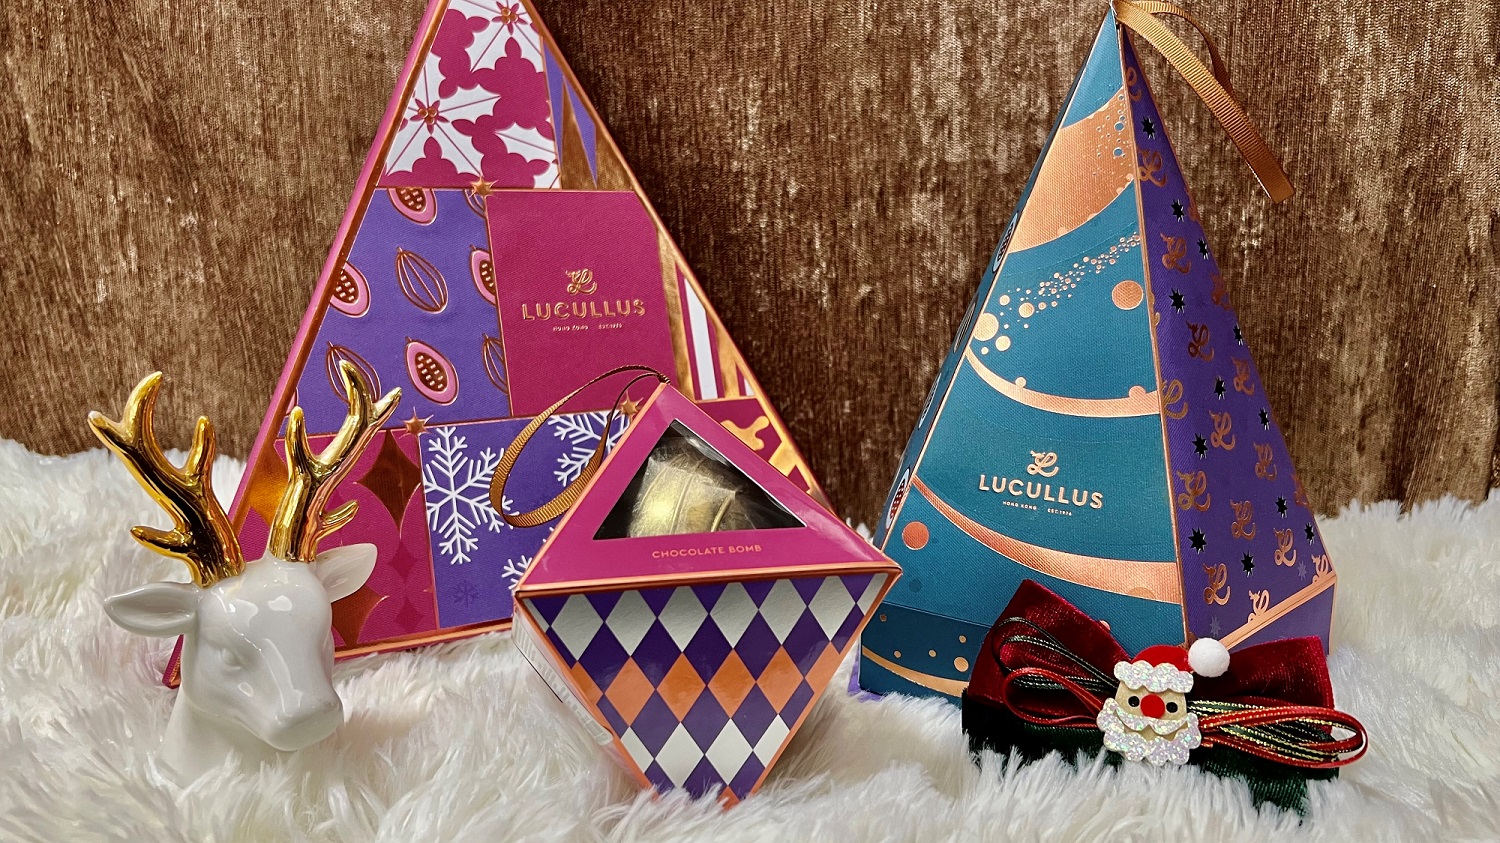 【美食】龍島聖誕限定禮盒 充滿節日色彩的朱古力及曲奇